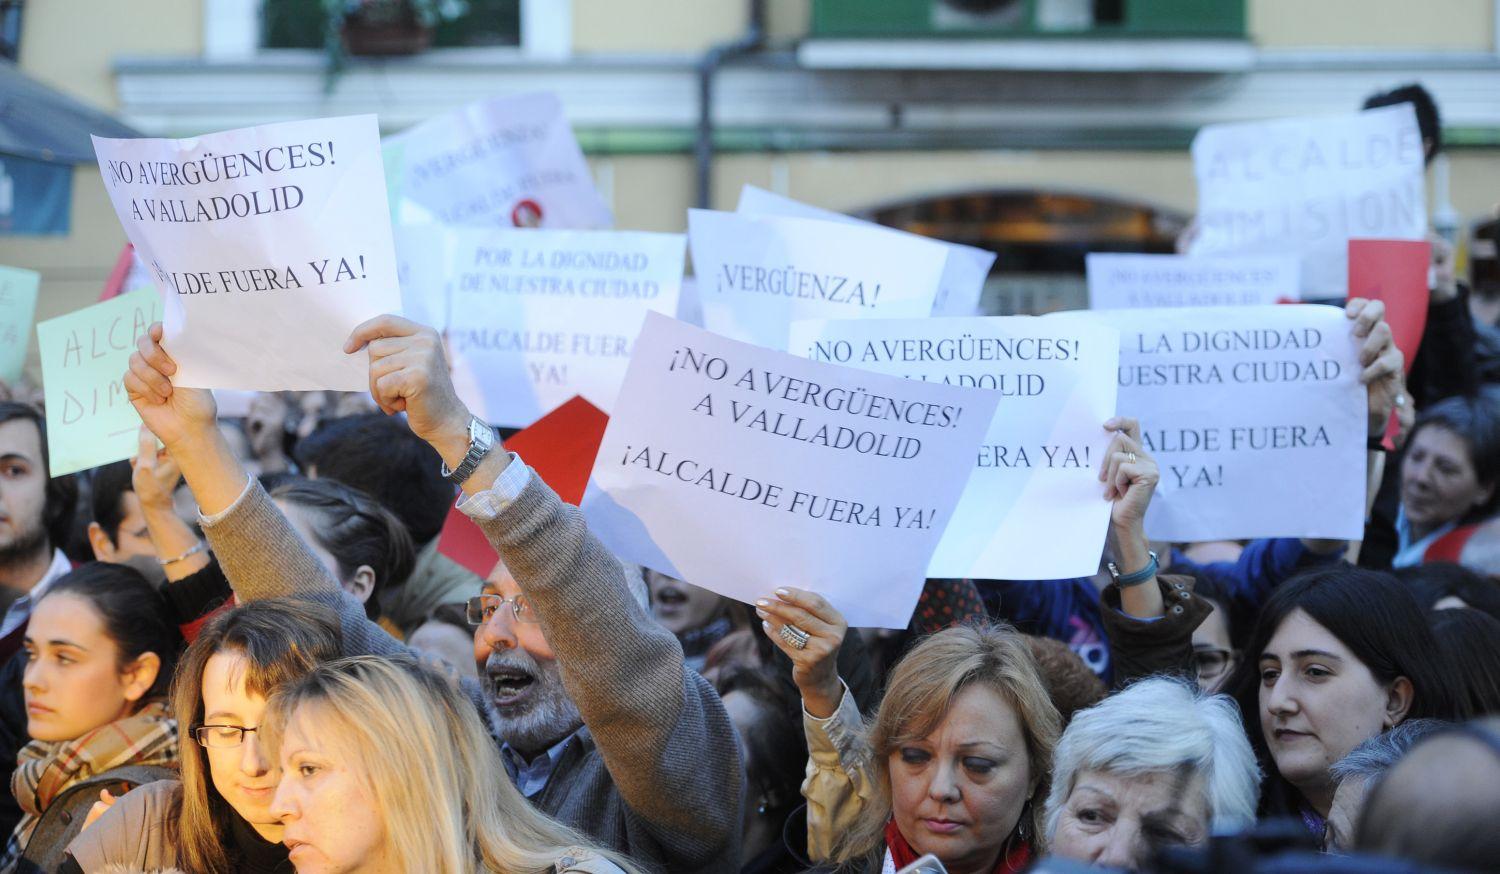 Riva már évek óta borzolja a kedélyeket a ahímsovinistzta akijelentéseivel. 2010-ben azért tüntettek ellene, mert az akkori egészségügyi miniszterre, Leire Pajinra tett sértő megjegyzéseket